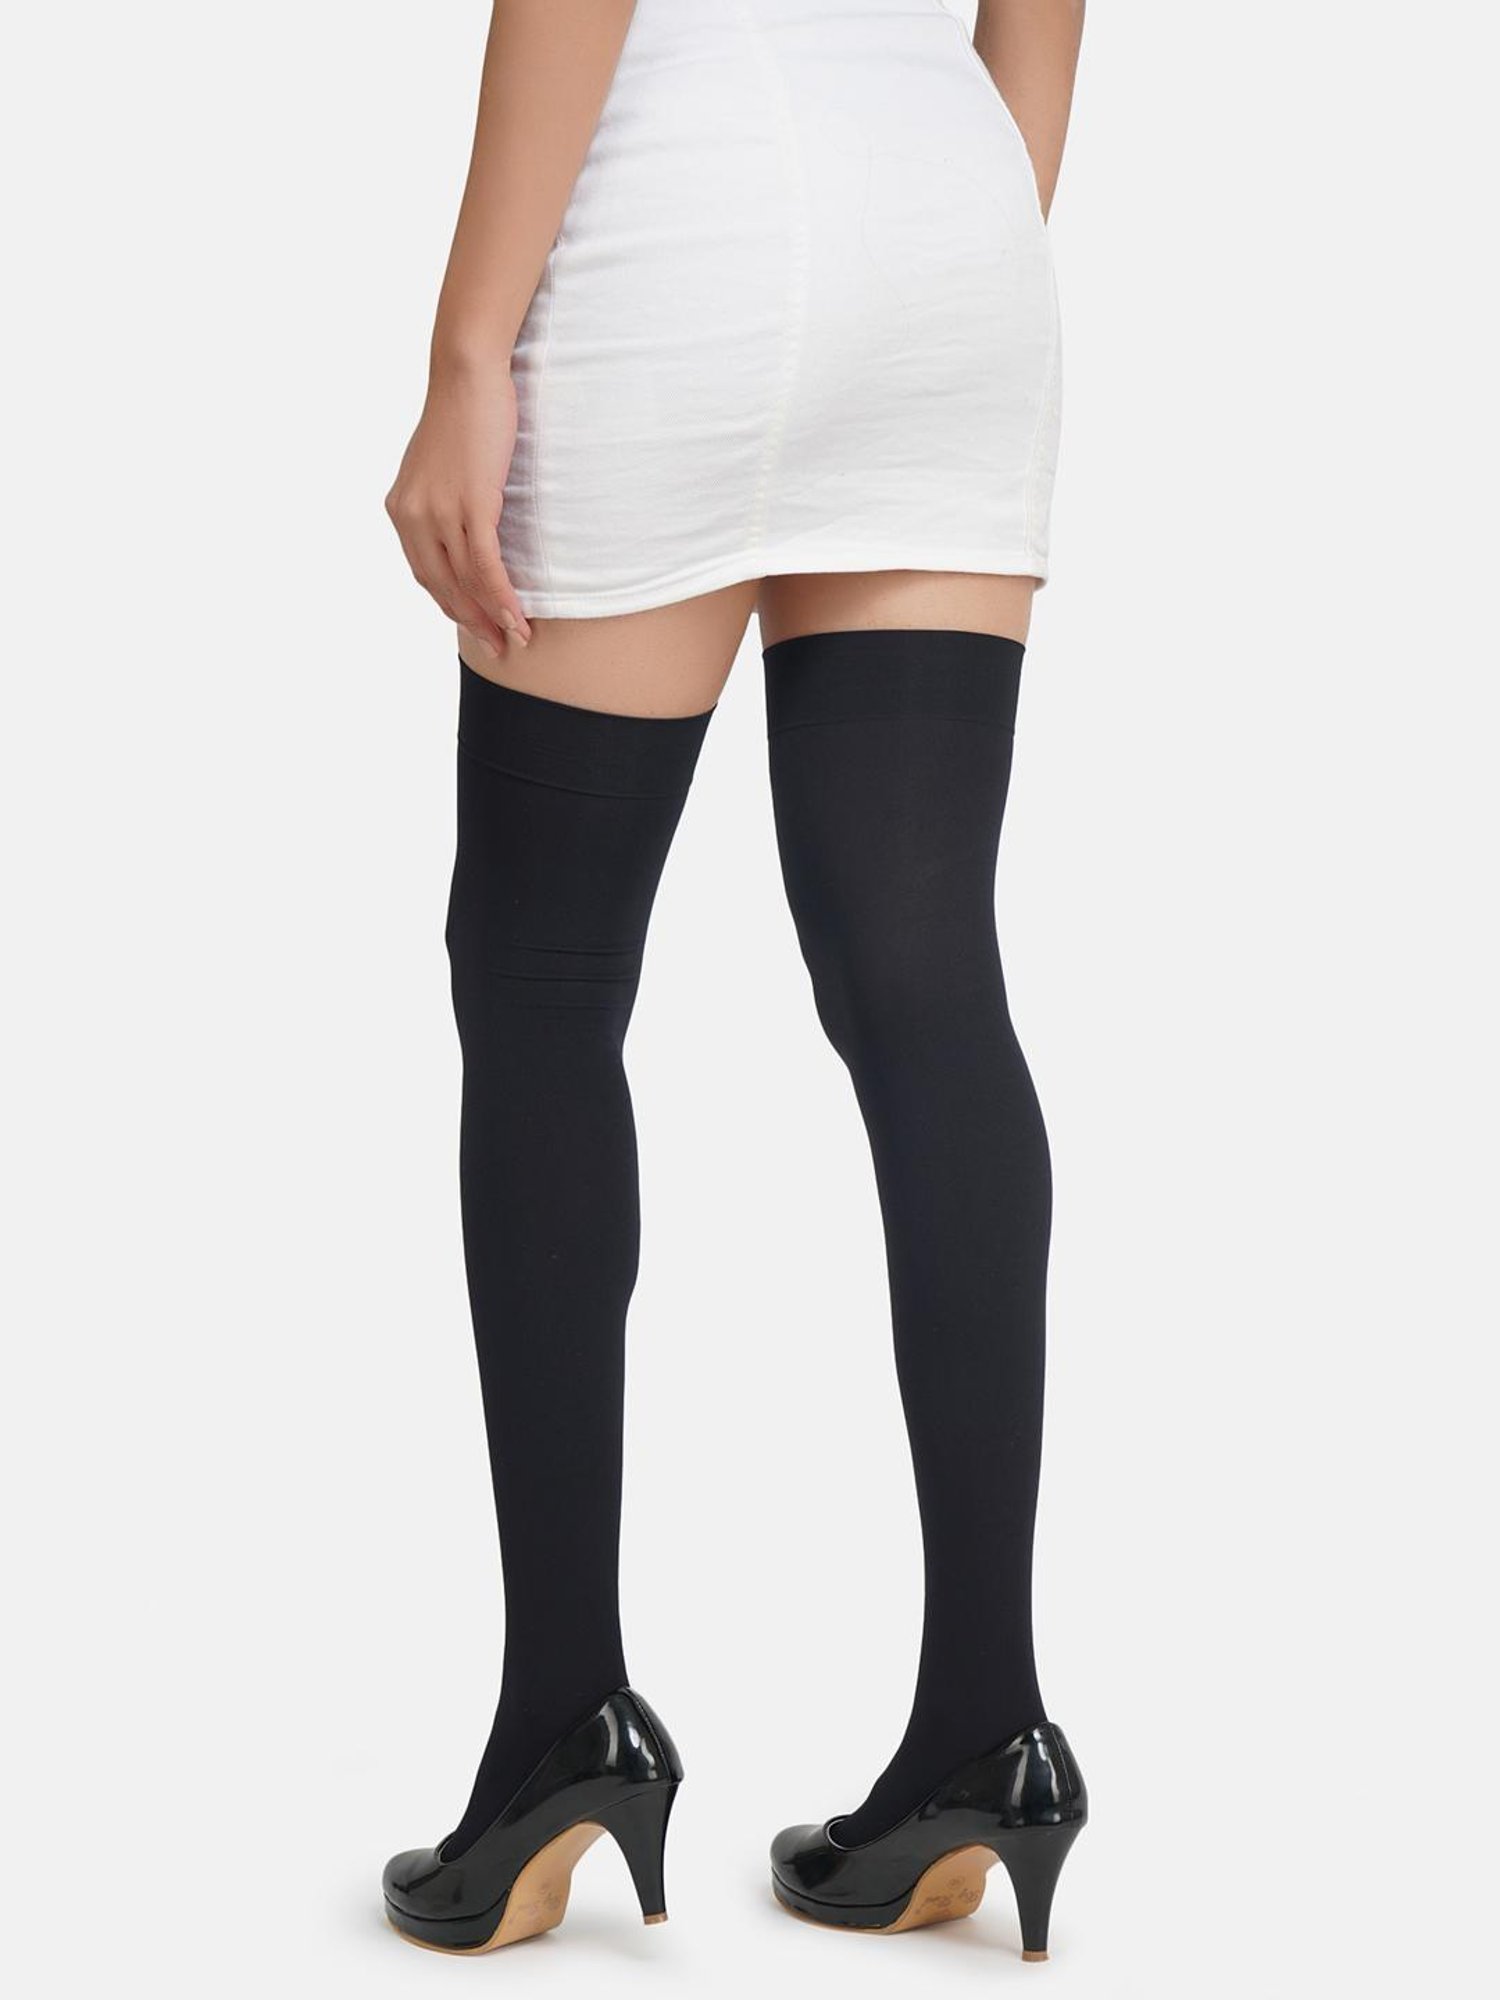 Buy NEXT 2 SKIN Black Stockings (Pack of 2) for Women Online